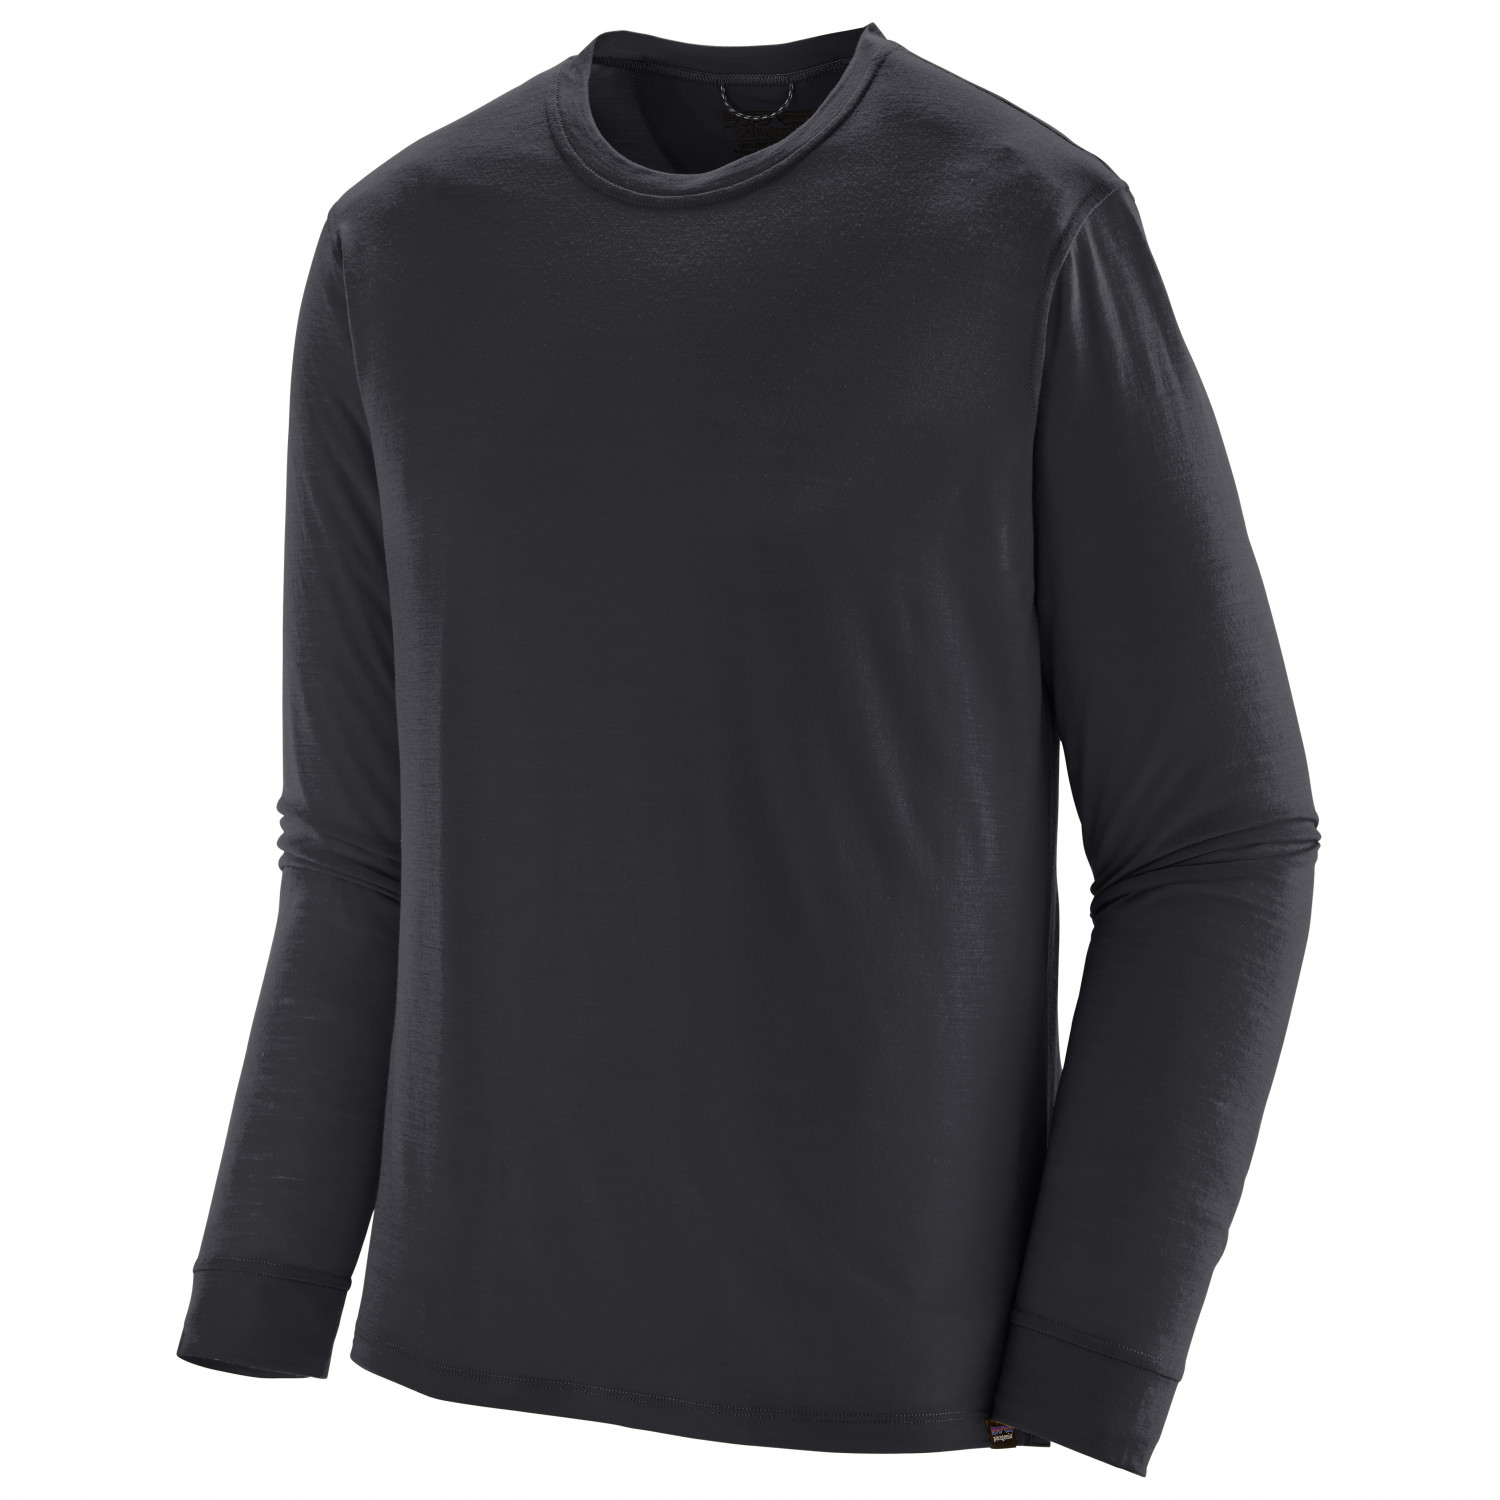 Рубашка из мериноса Patagonia L/S Cap Cool Merino Shirt, черный